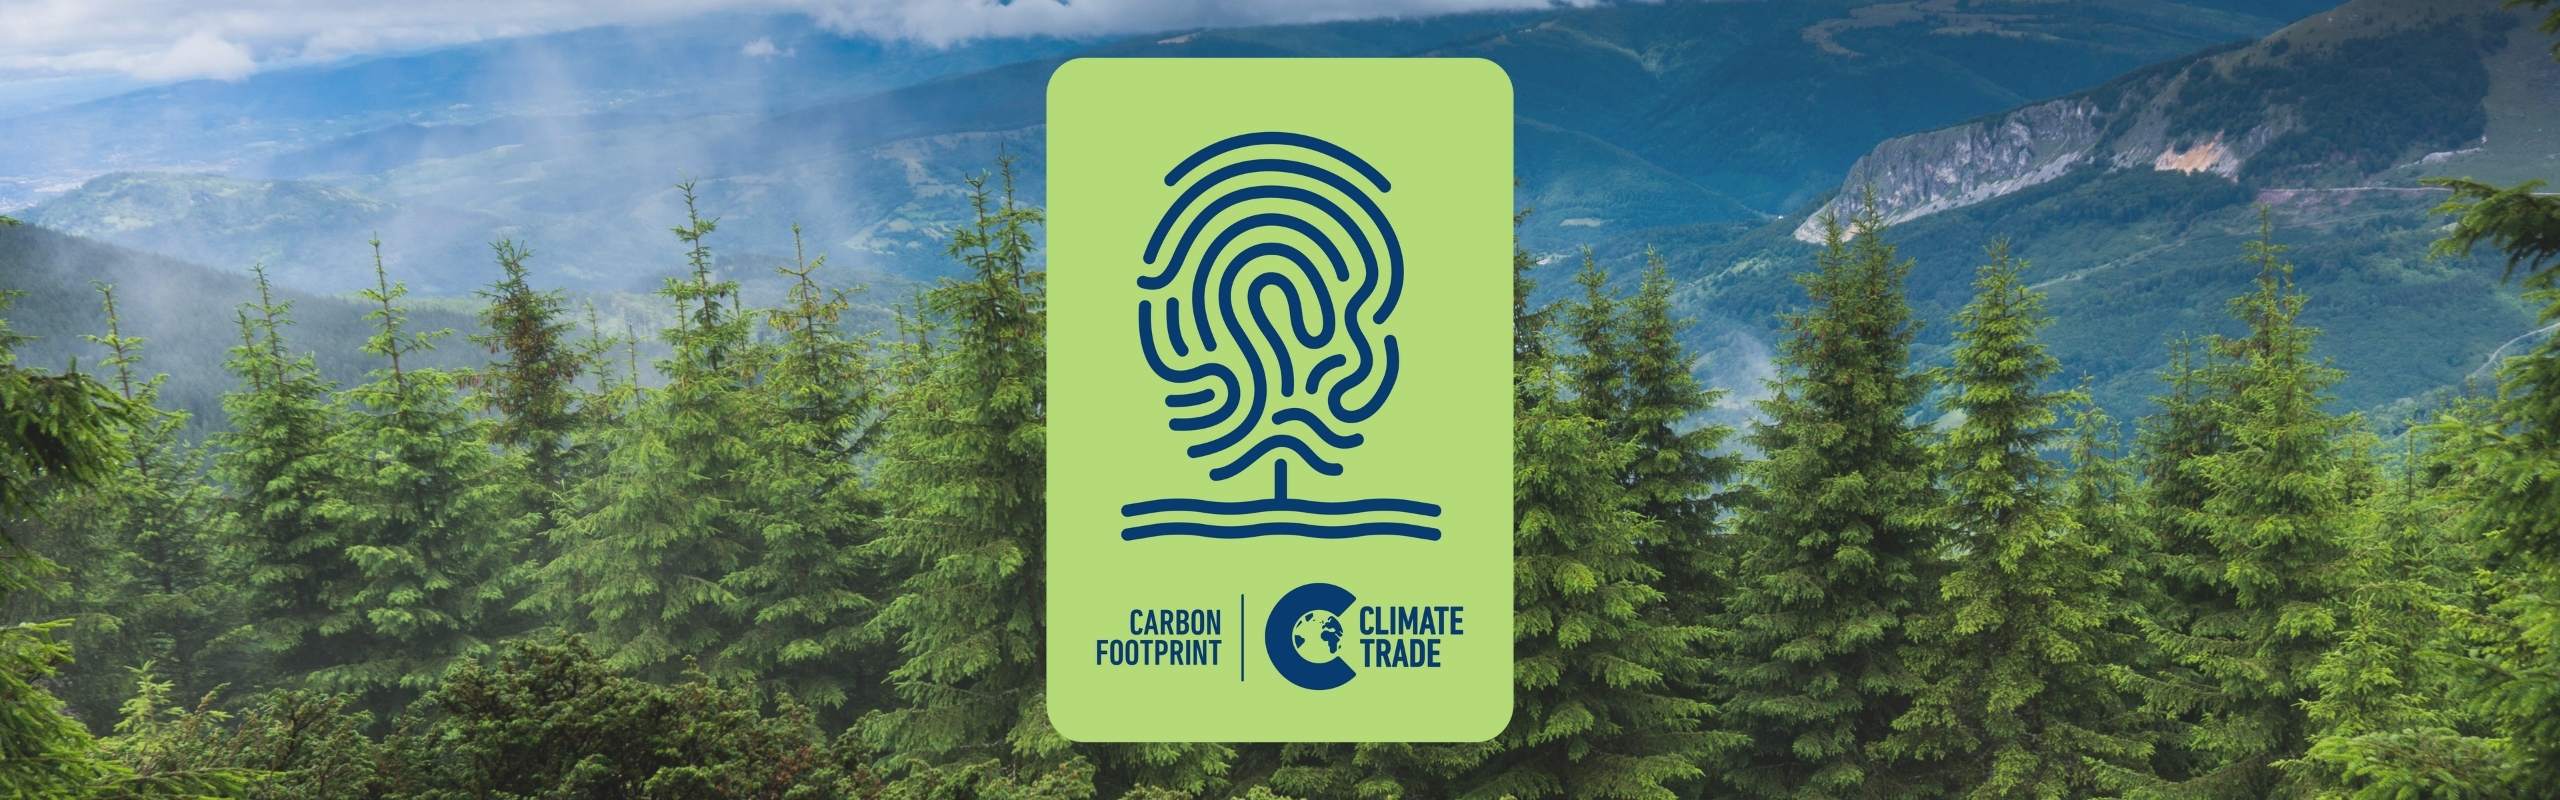 Carbon footprint ClimateTrade